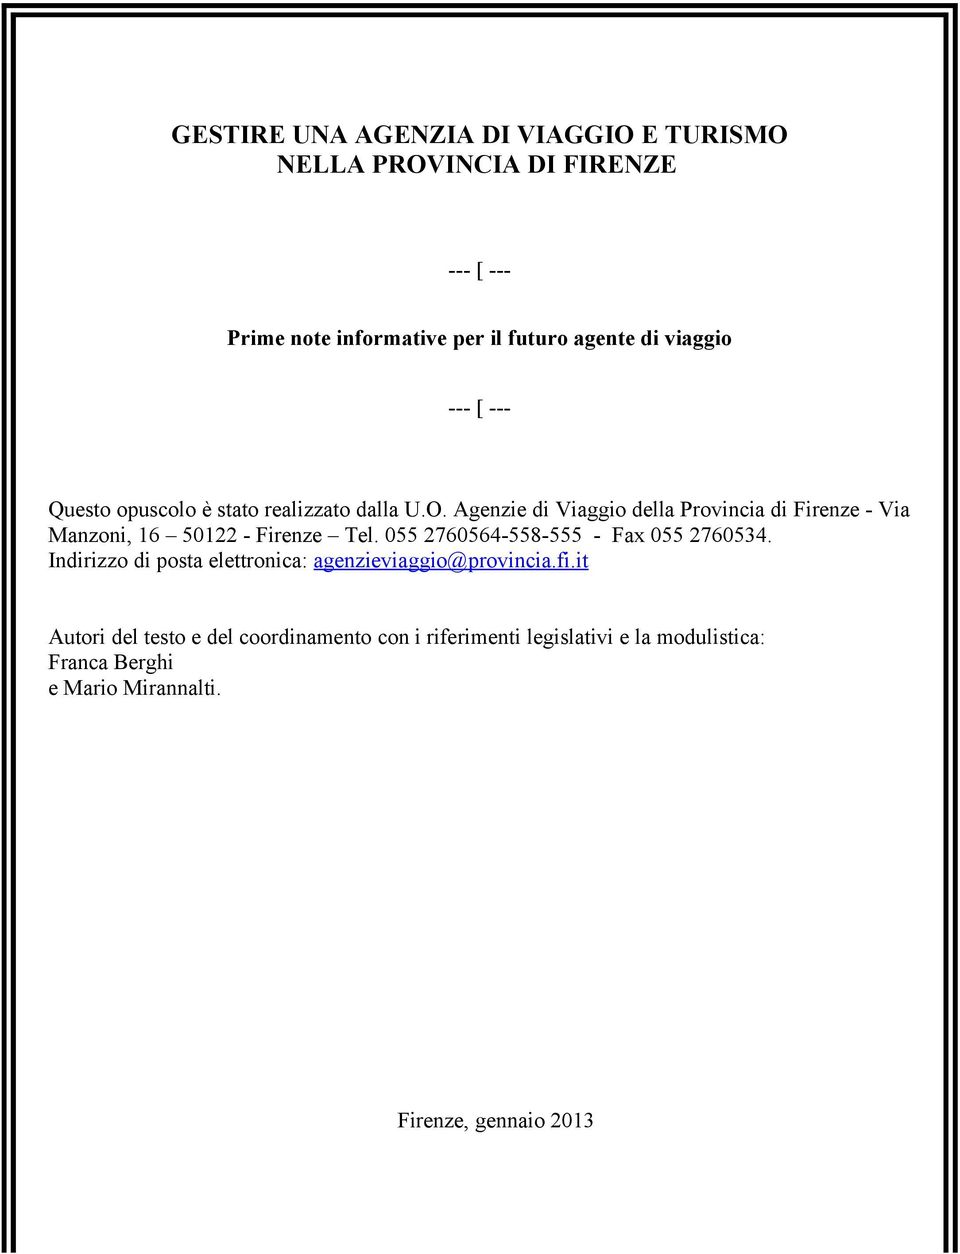 Agenzie di Viaggio della Provincia di Firenze - Via Manzoni, 16 50122 - Firenze Tel. 055 2760564-558-555 - Fax 055 2760534.